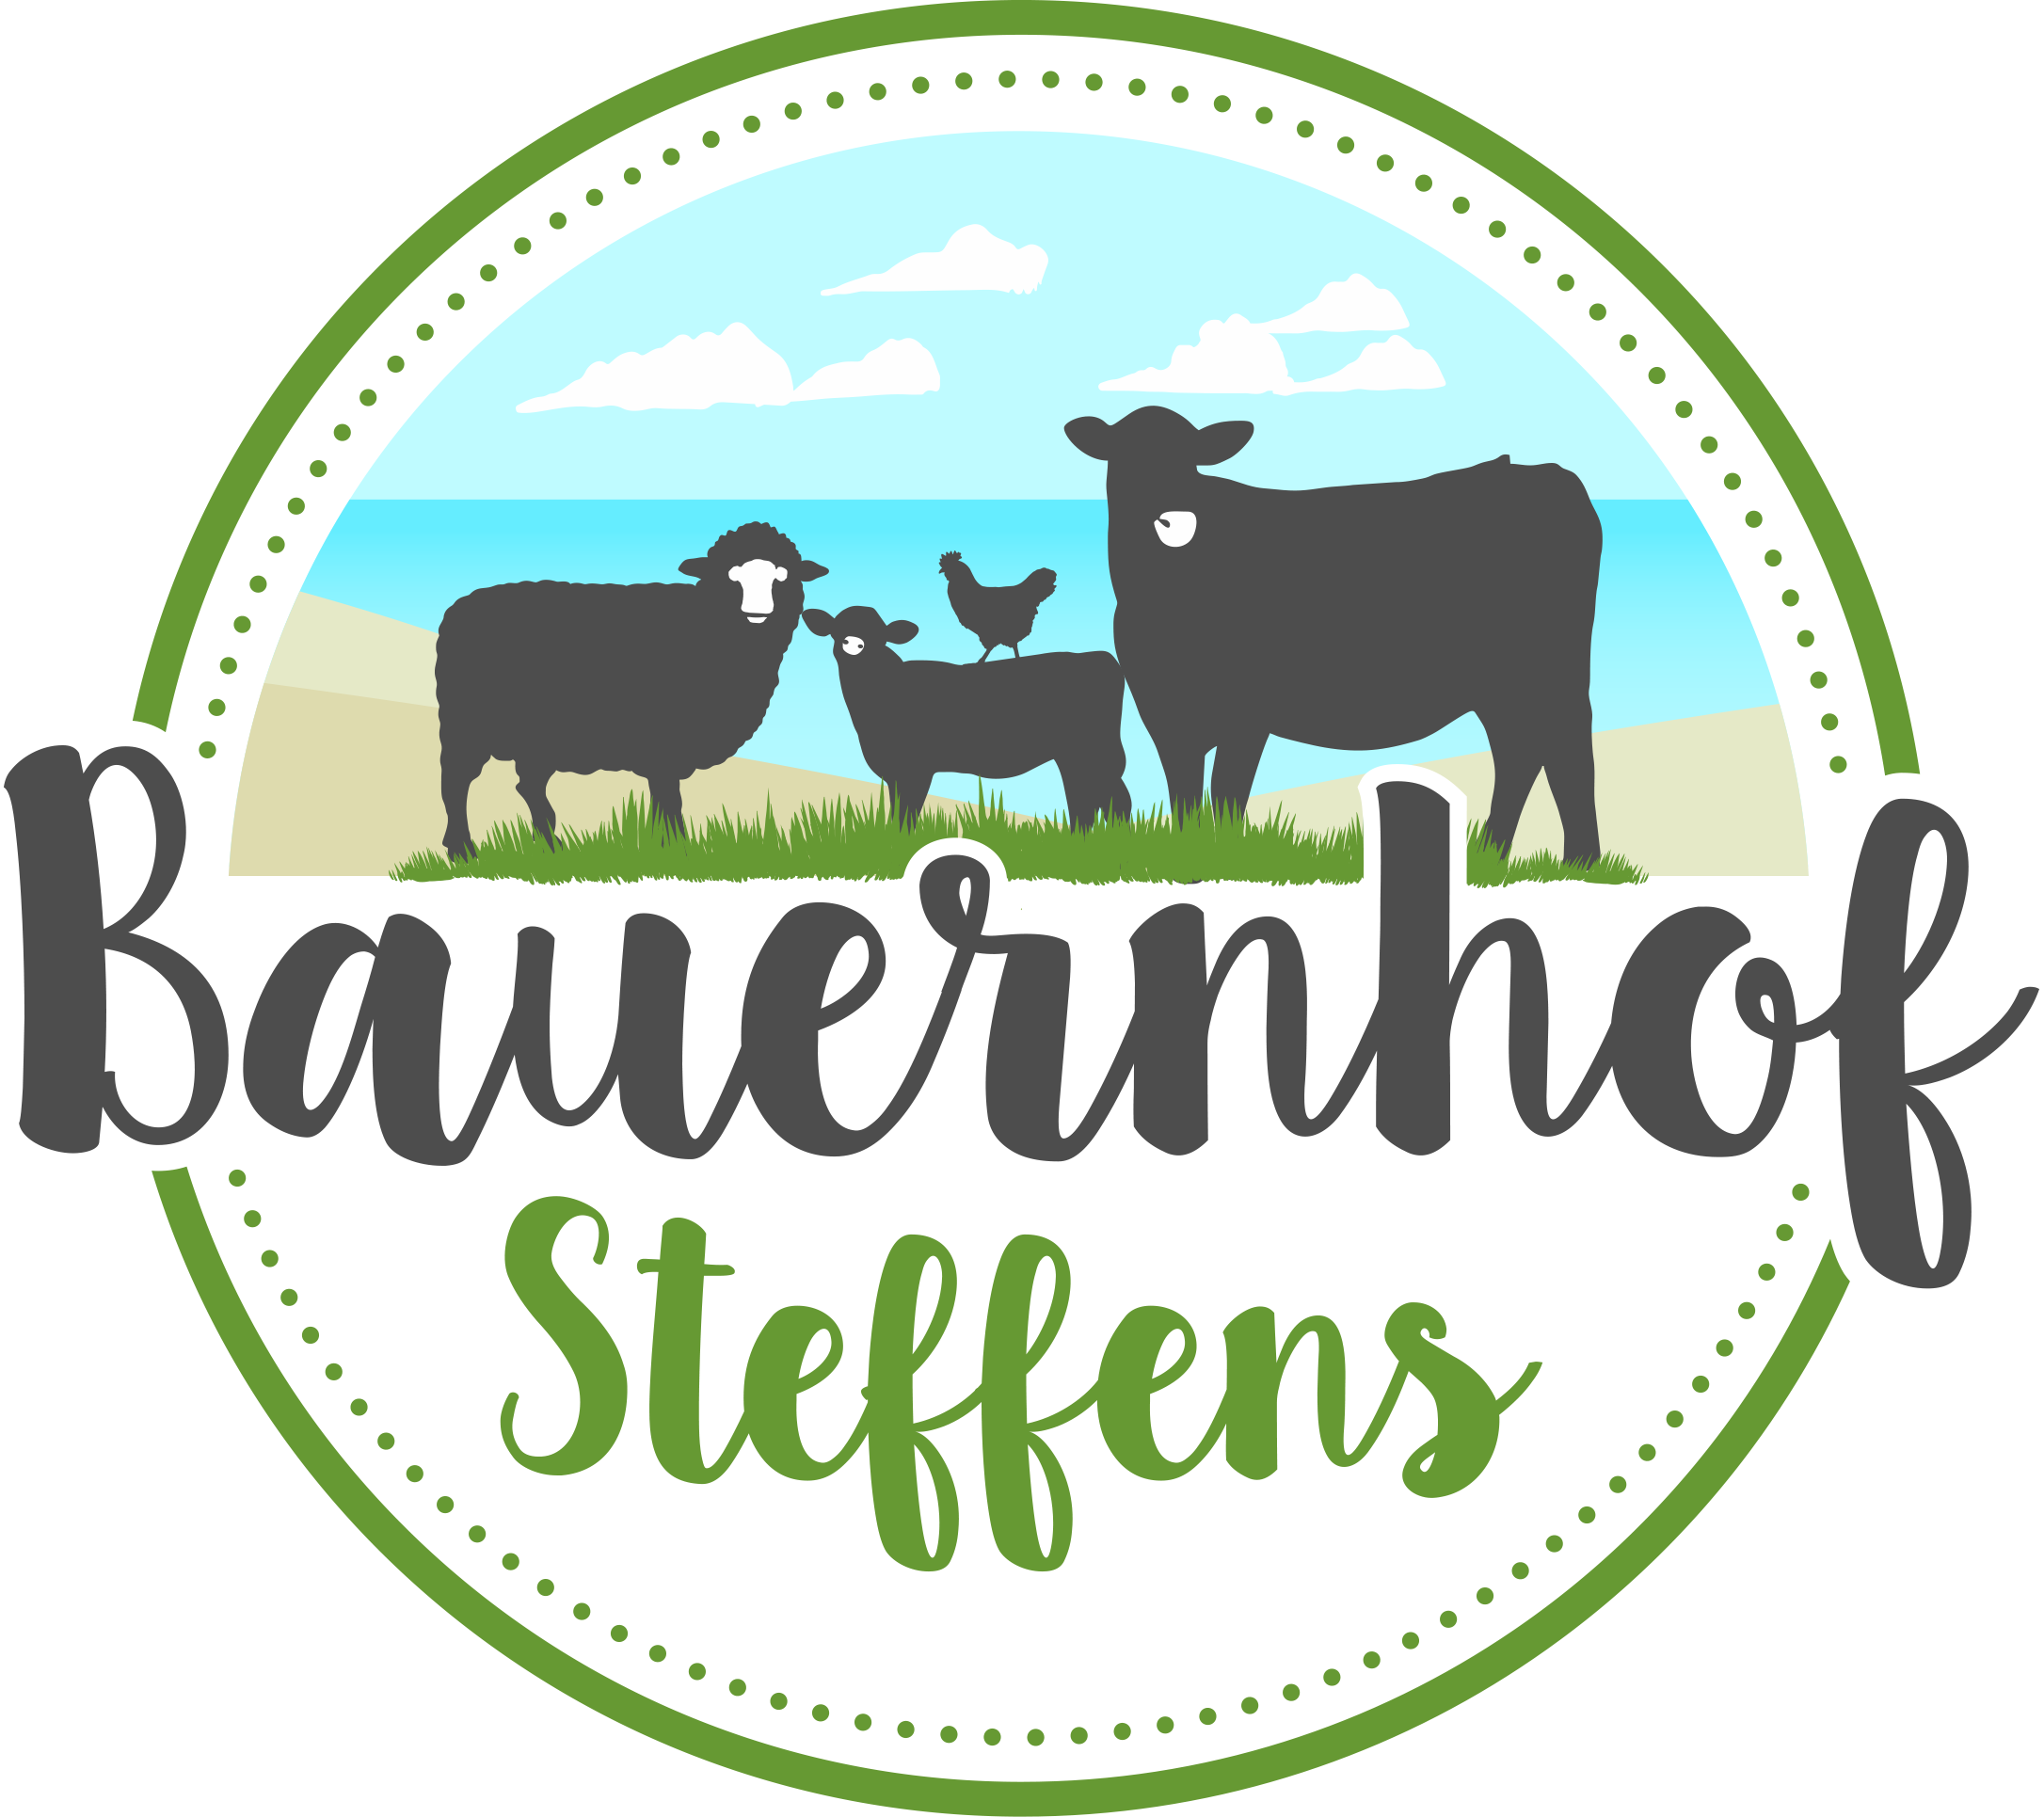 Bauernhof Steffens